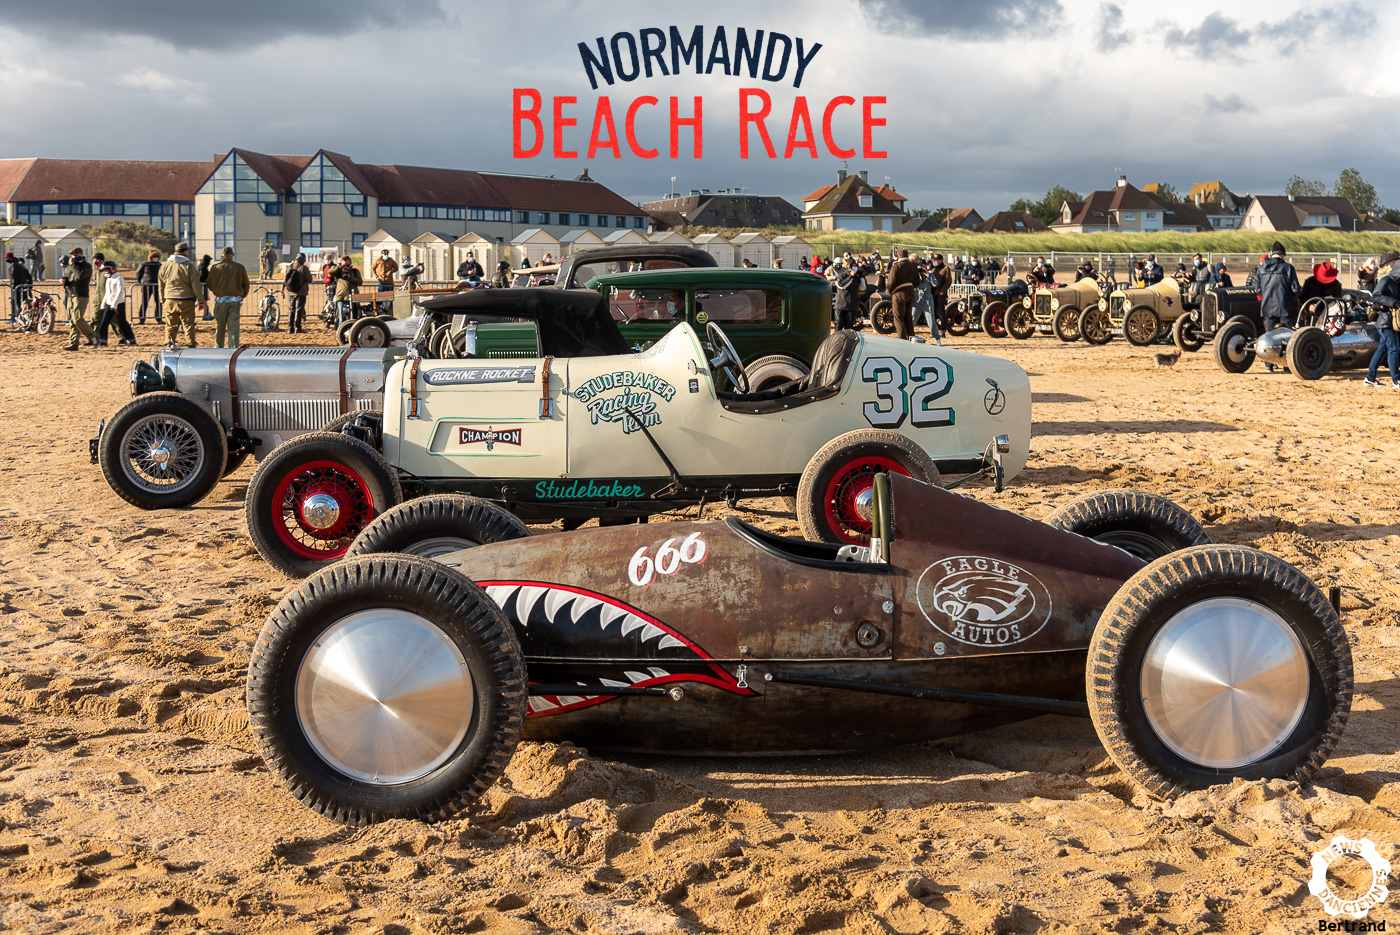 Normandy Beach Race 2020, c’était pas génial, c’était pire !